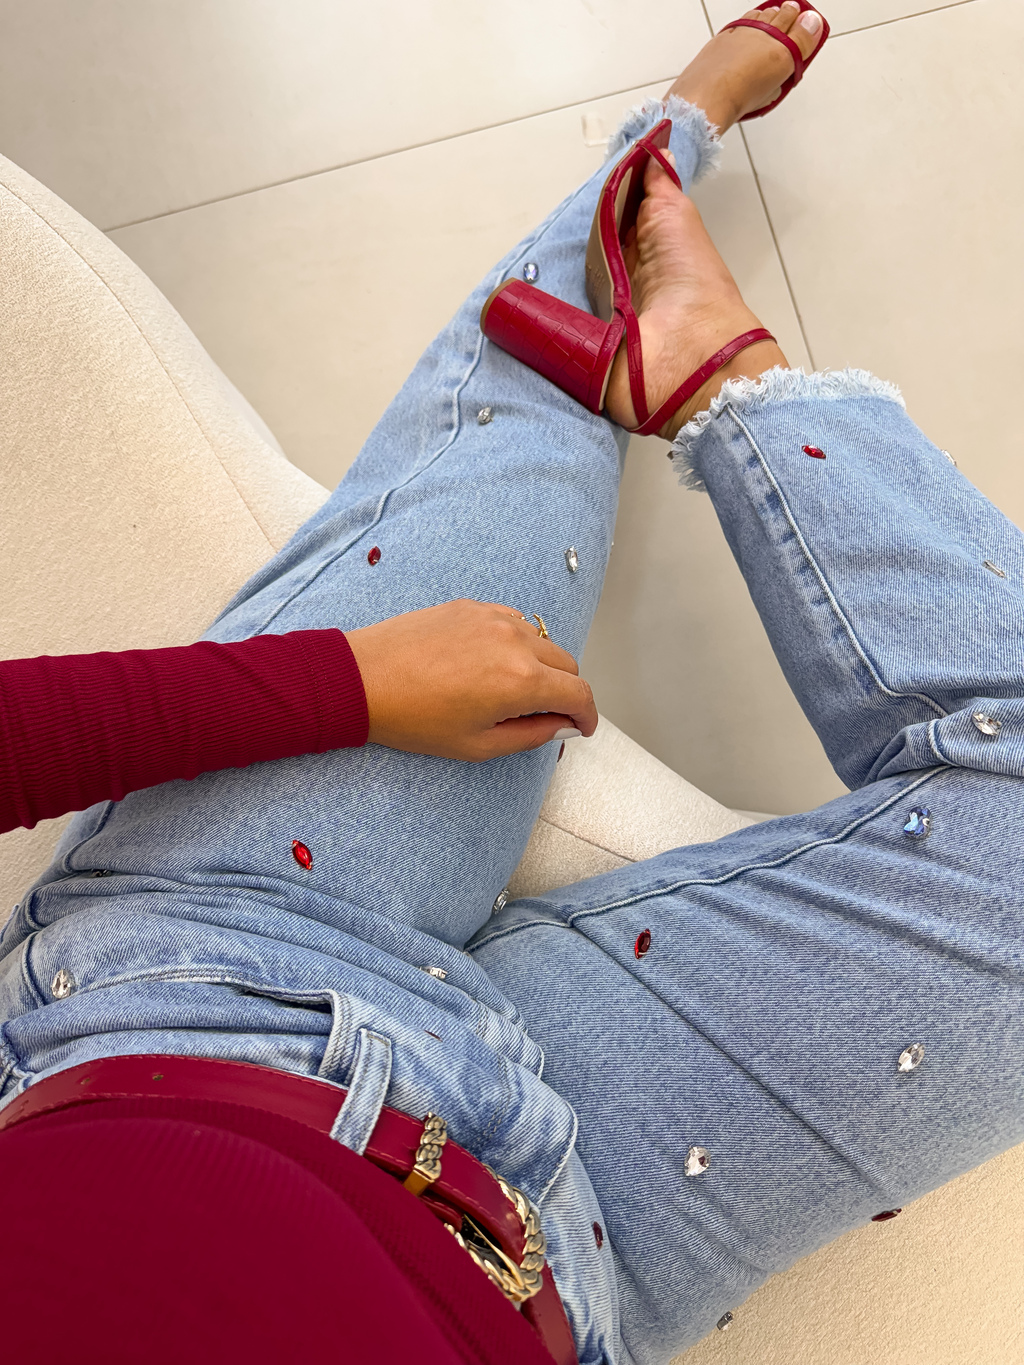 Calças jeans Premium melhor produto para vender com alta taxa ganho! #